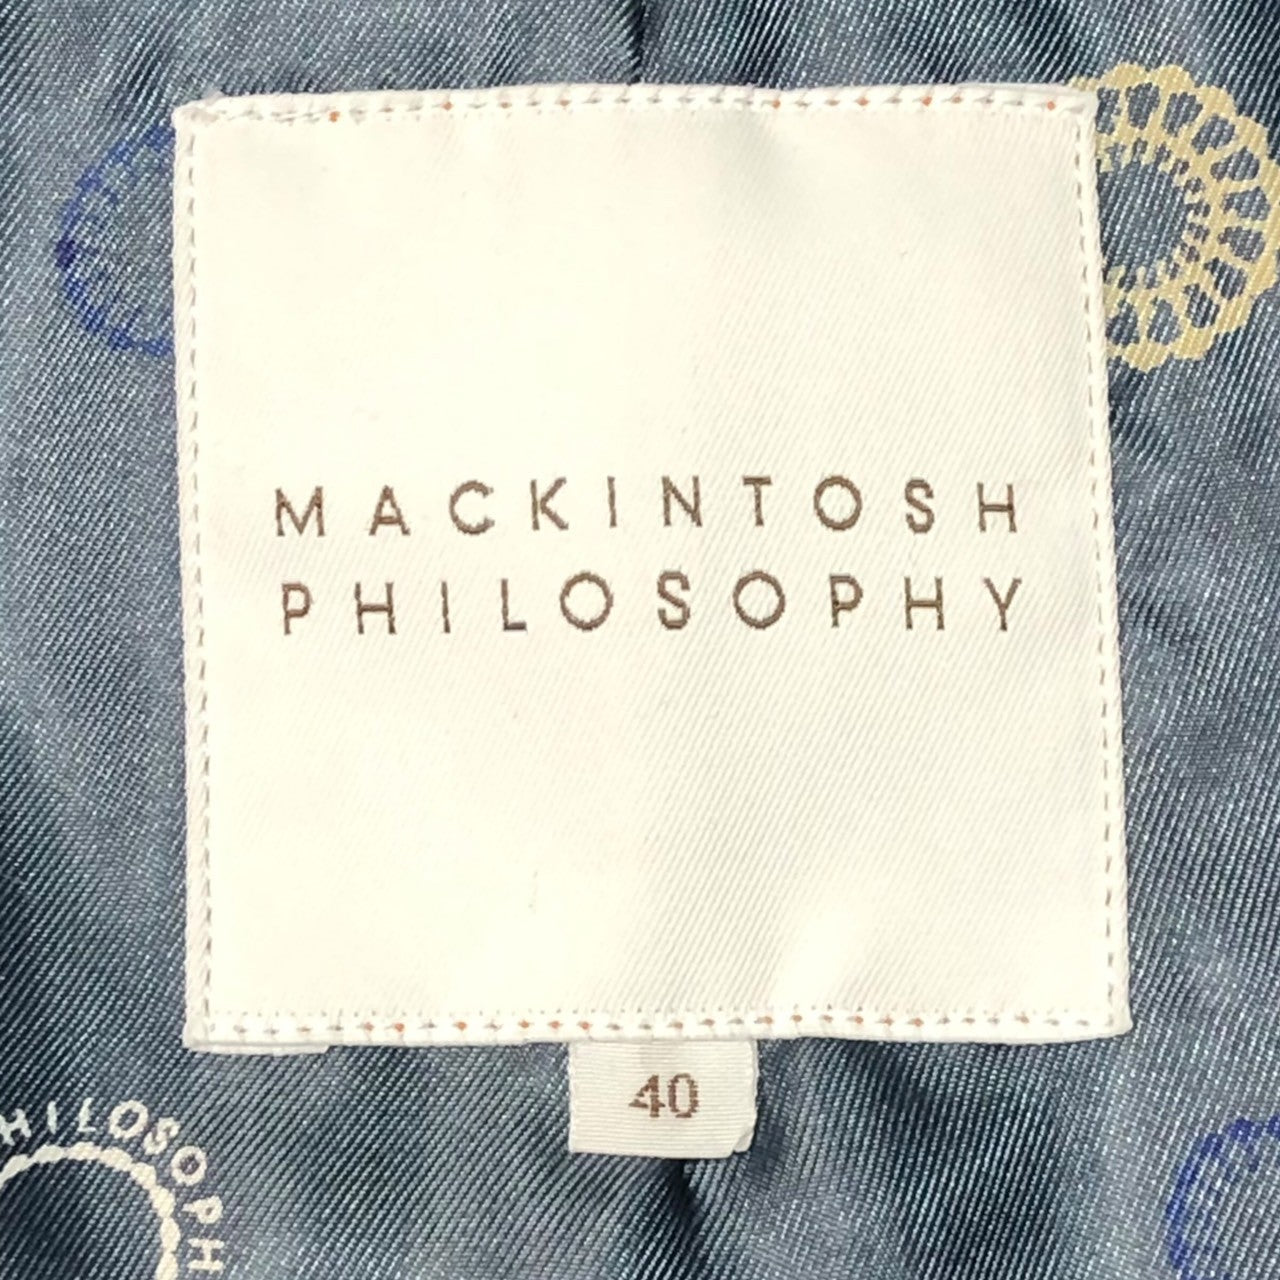 MACKINTOSH PHILOSOPHY(マッキントッシュ フィロソフィー) ライナー付き ステンカラー コート 4CN60-001-29 40(L程度) ネイビー